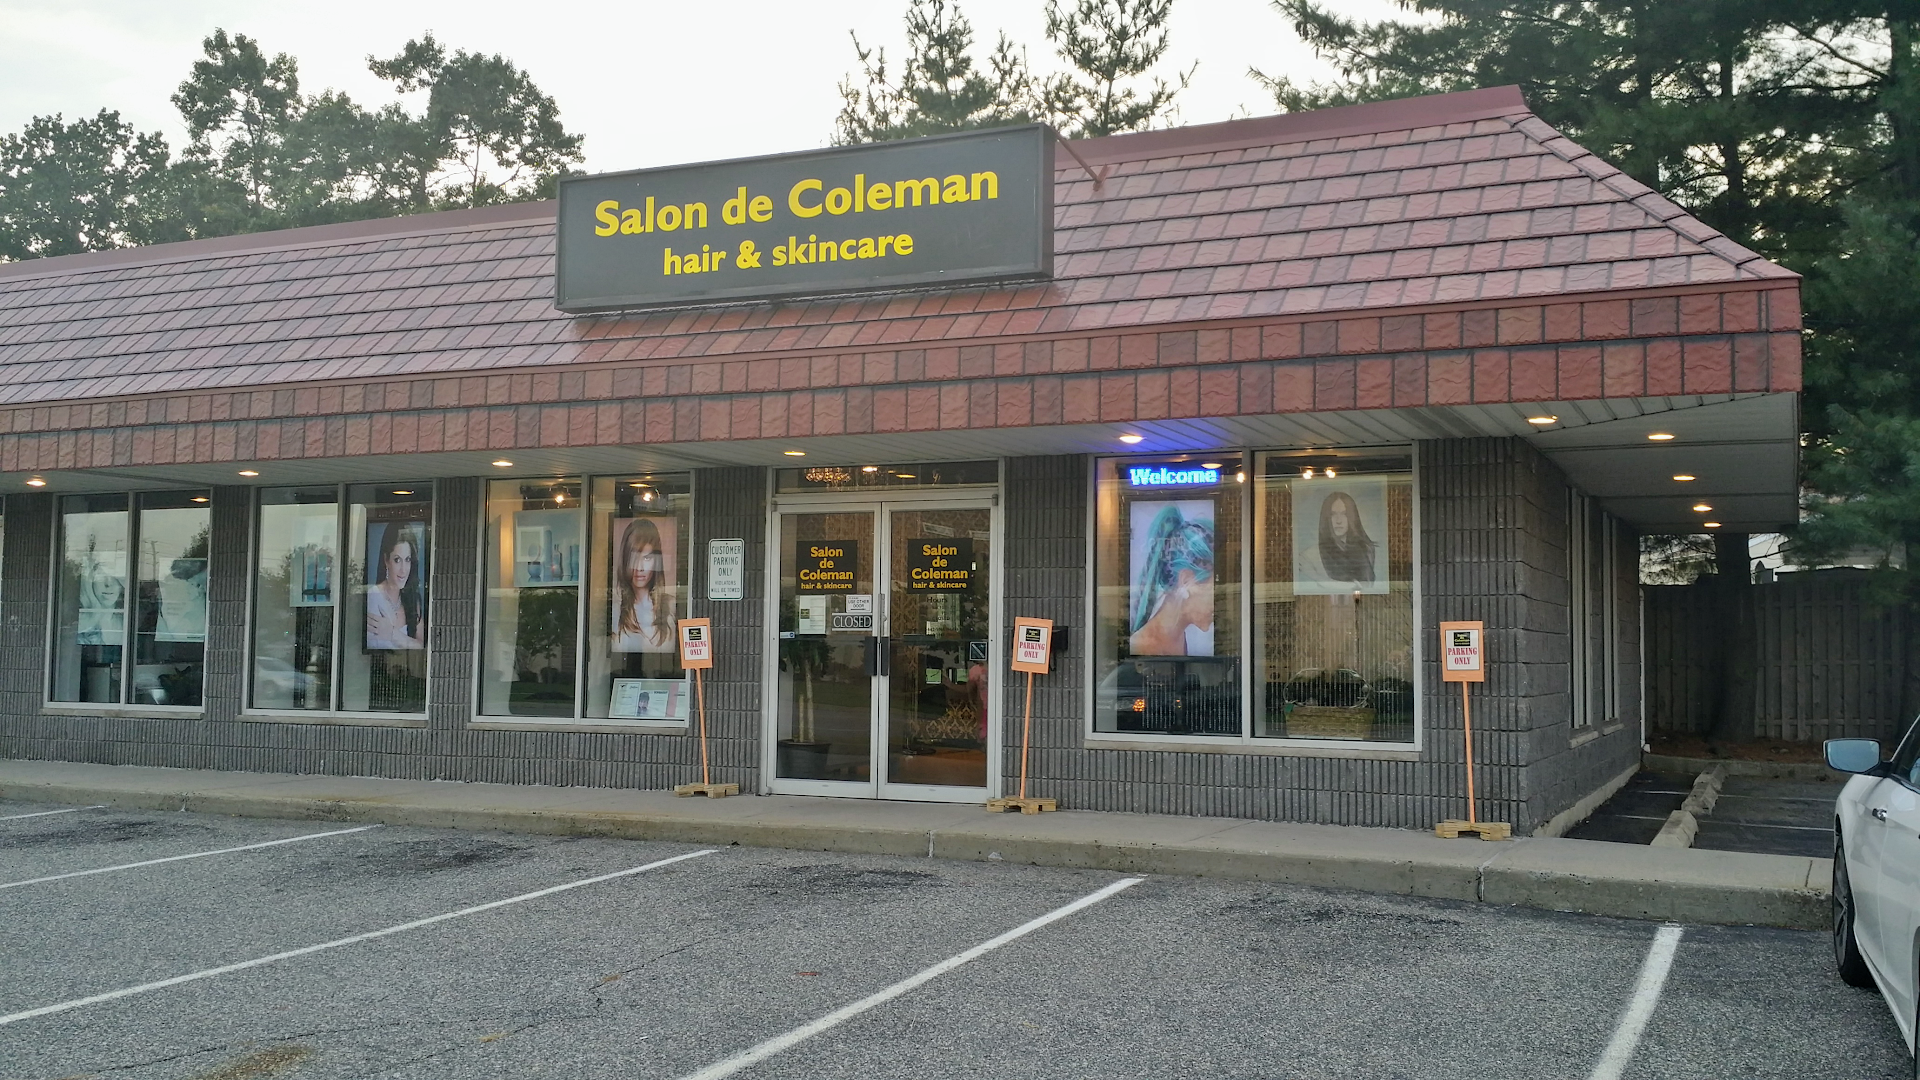 Salon de Coleman